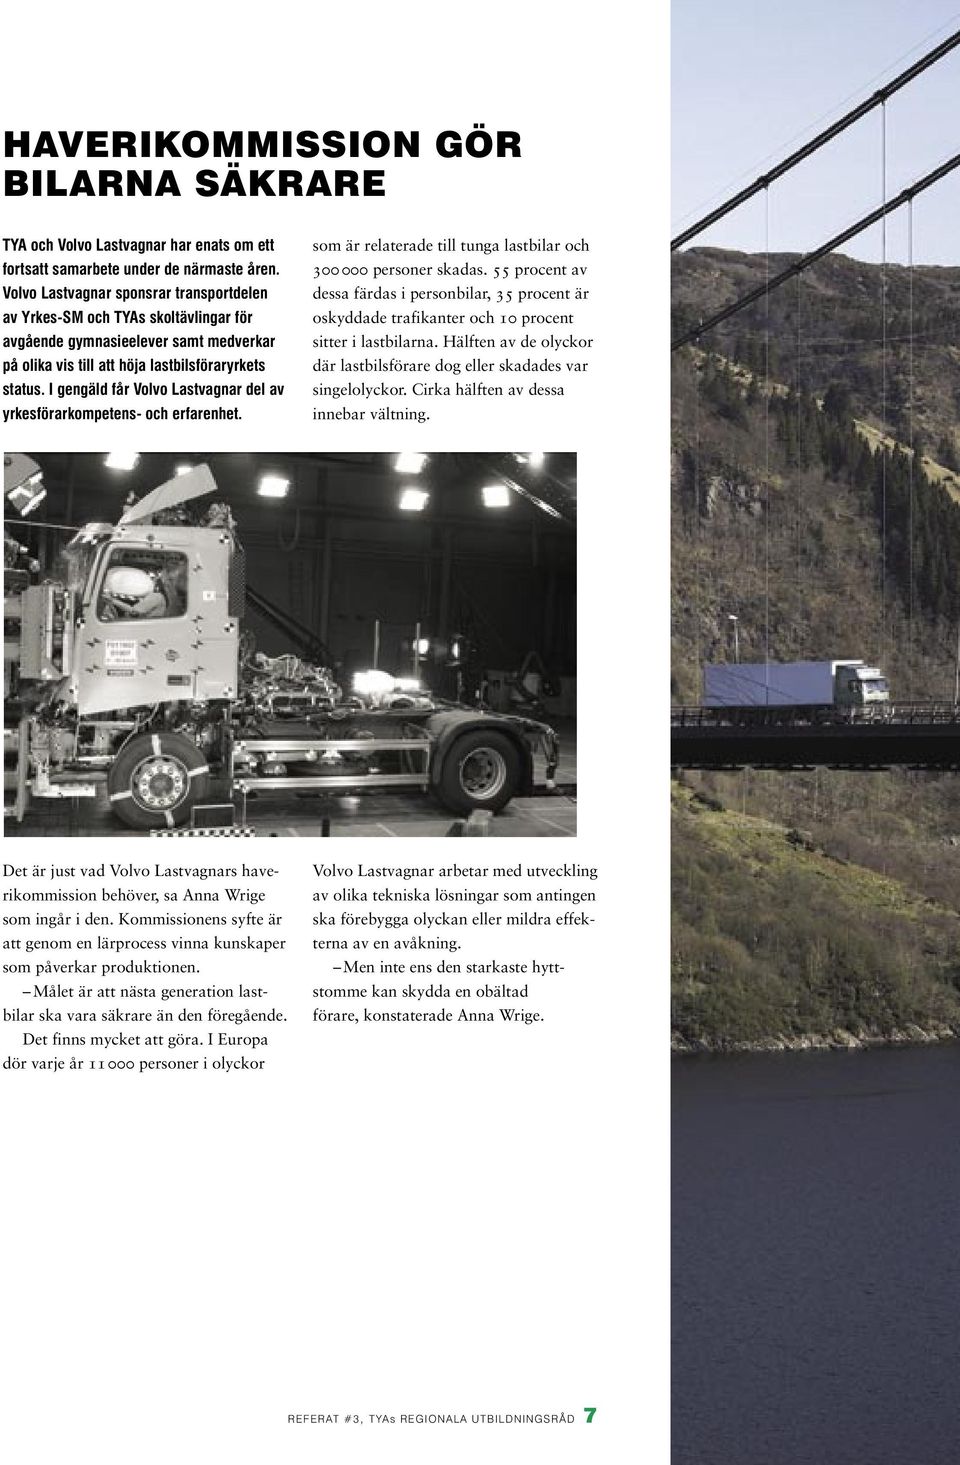 I gengäld får Volvo Lastvagnar del av yrkesförarkompetens- och erfarenhet. som är relaterade till tunga lastbilar och 300000 personer skadas.